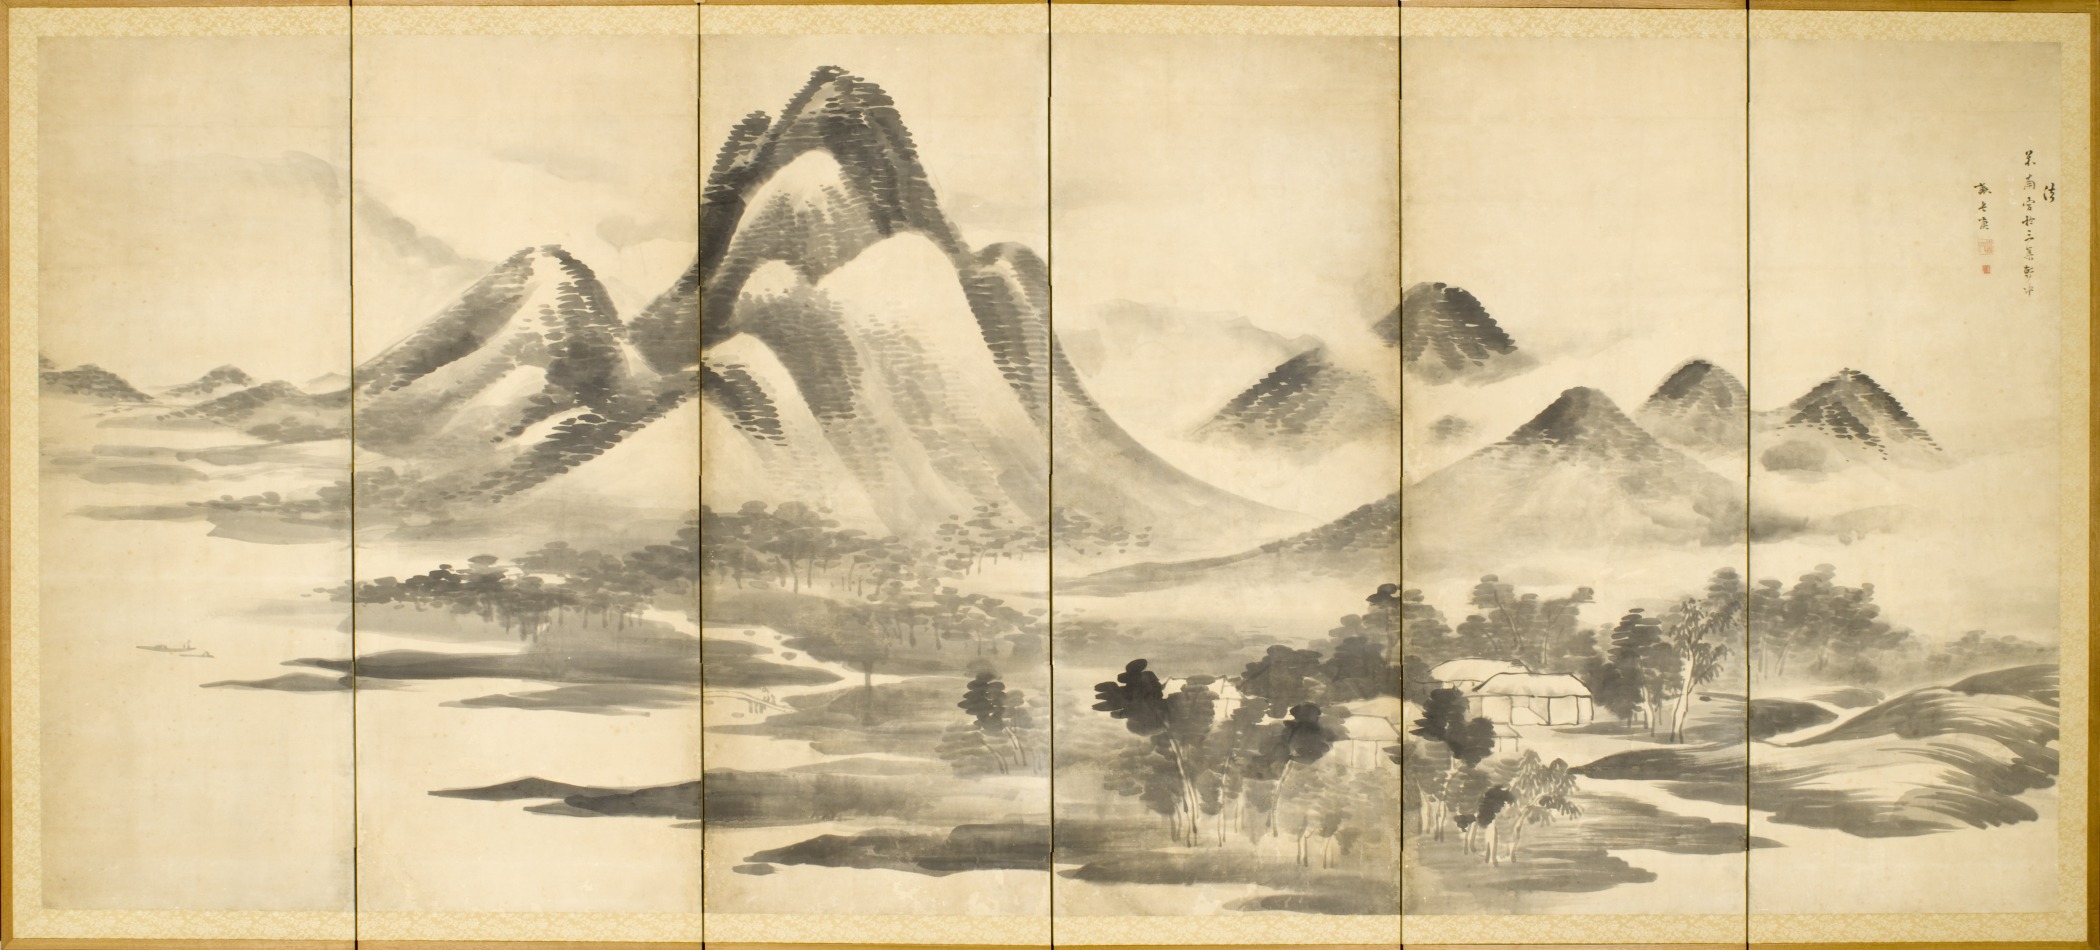 日本美術史ノート 江戸中期の絵画2 南画 大雅と蕪村